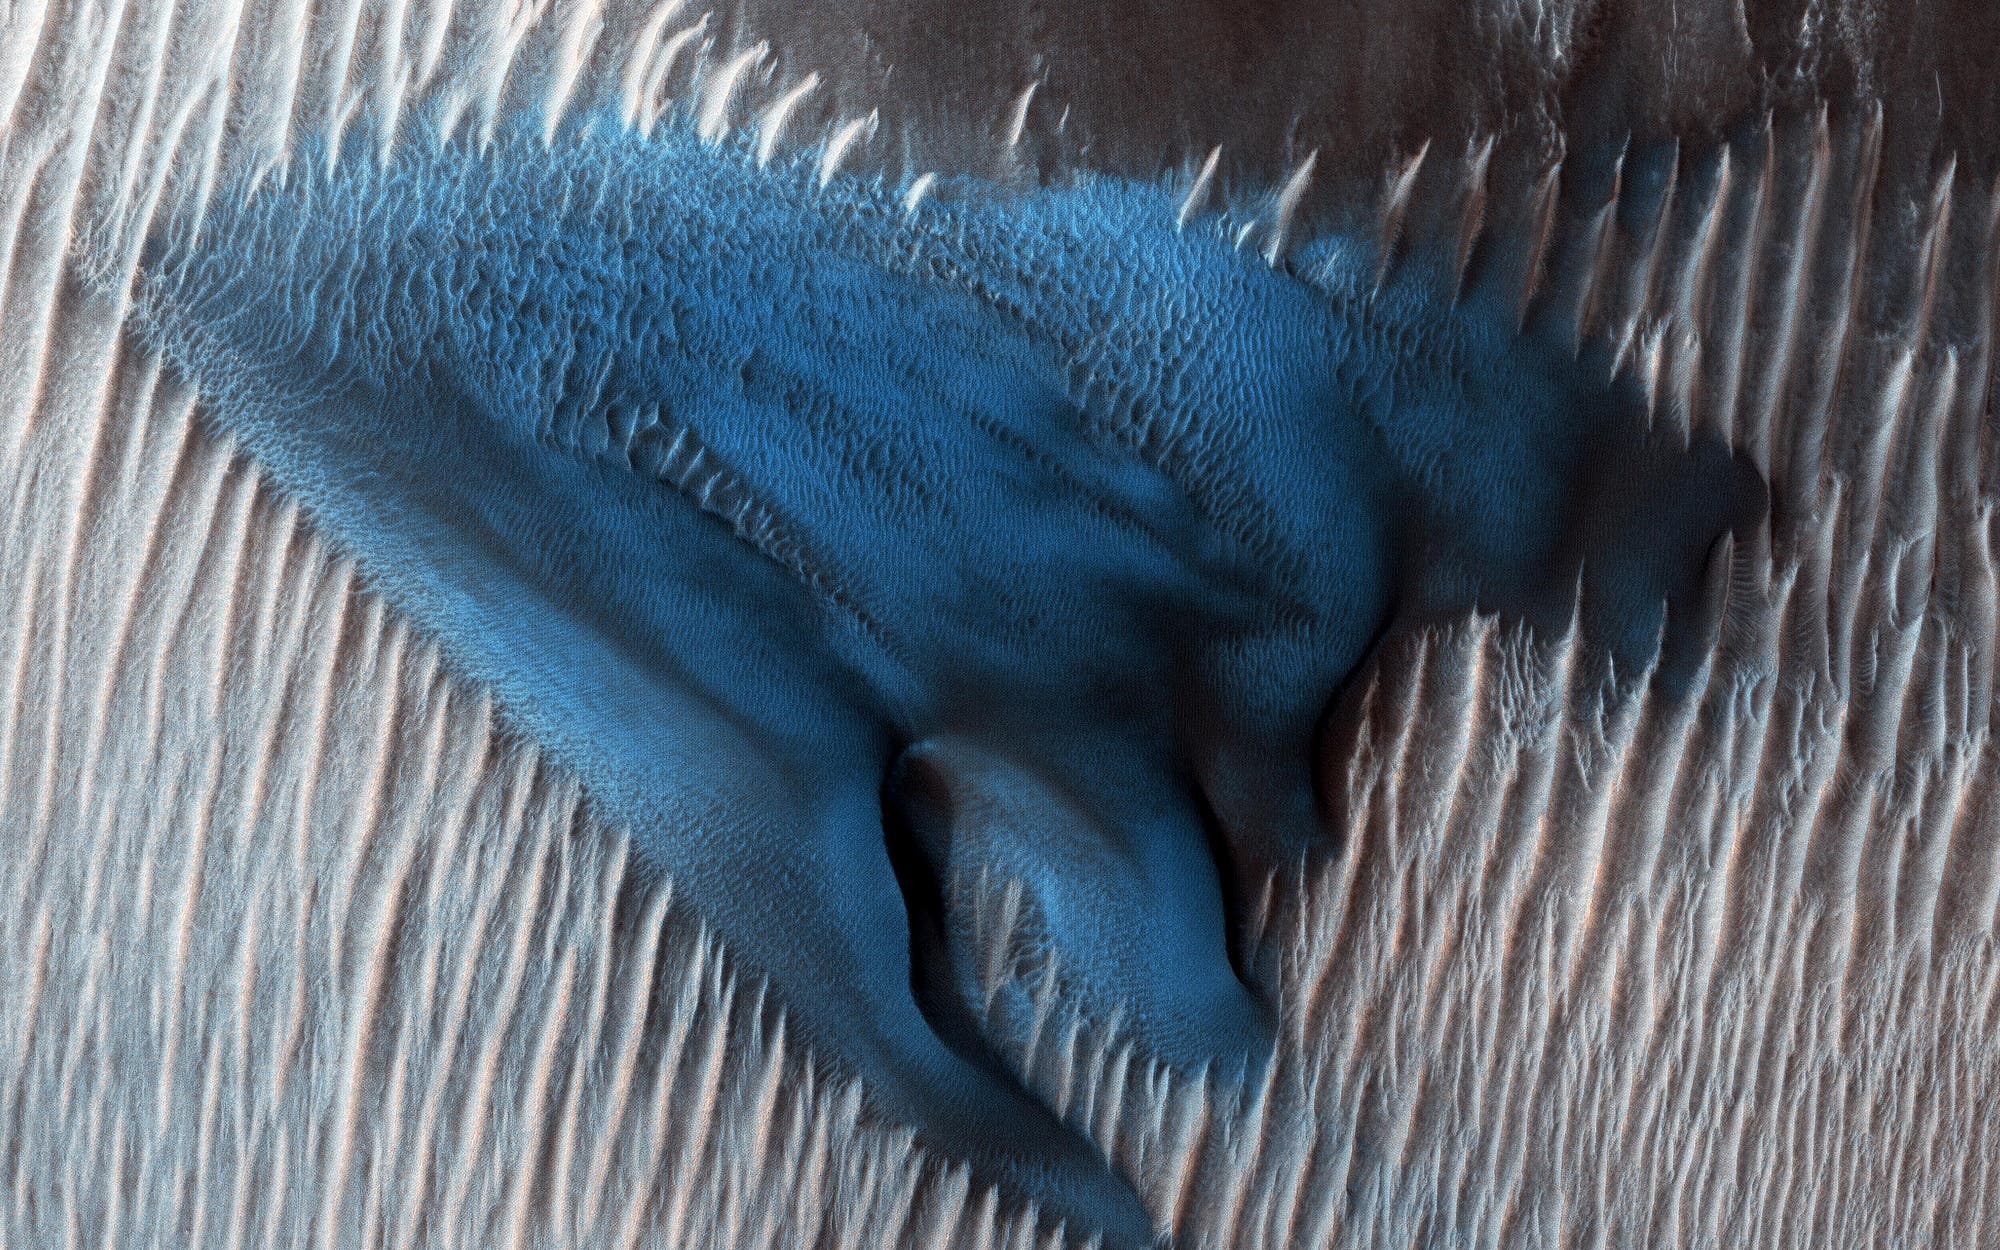 Dunkelblaue Dünen in einem Marskrater